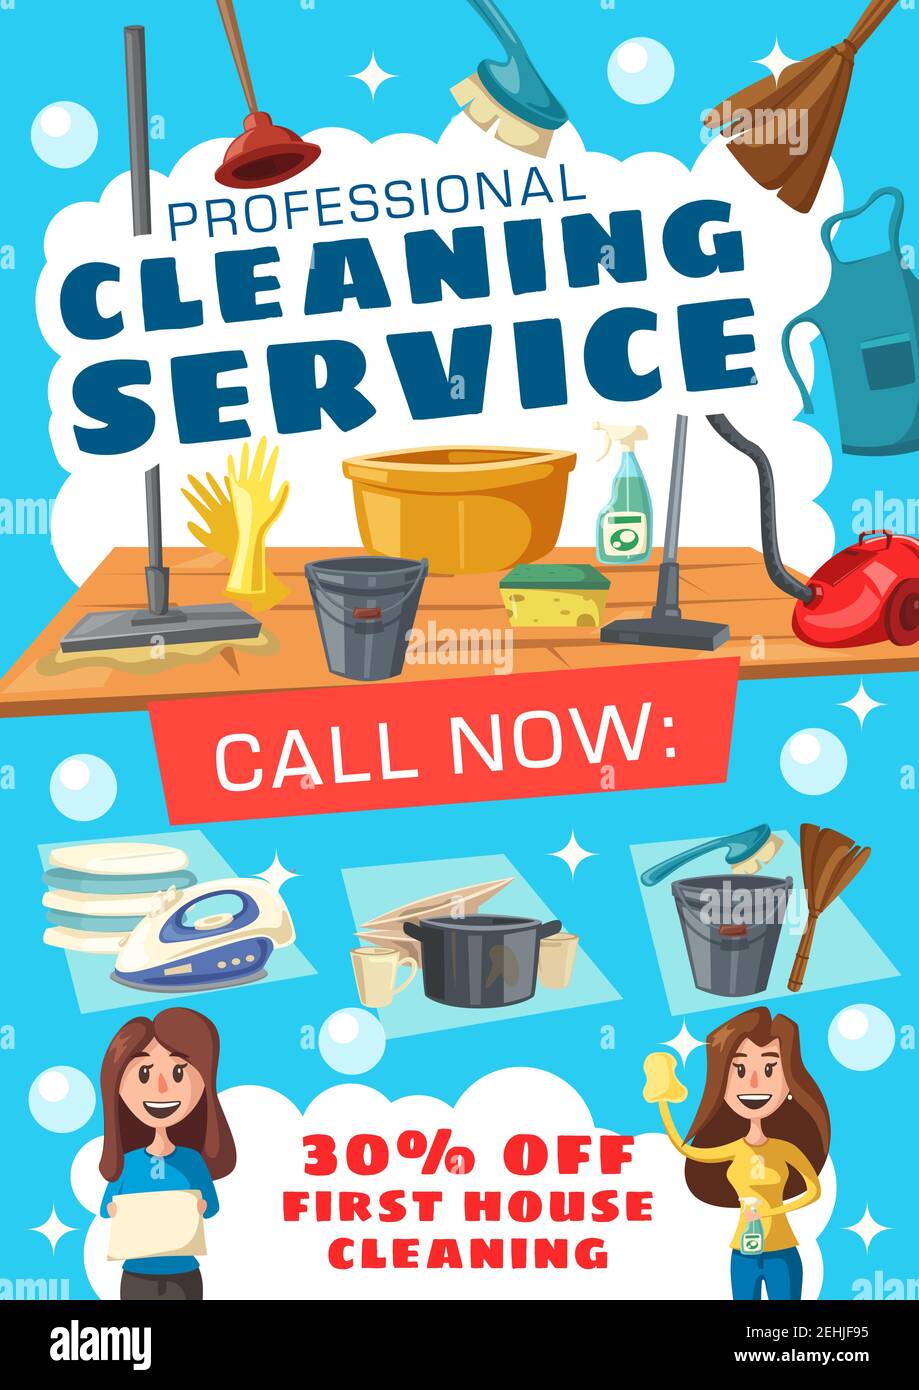 Promociones en Servicios de Limpieza de Suelos